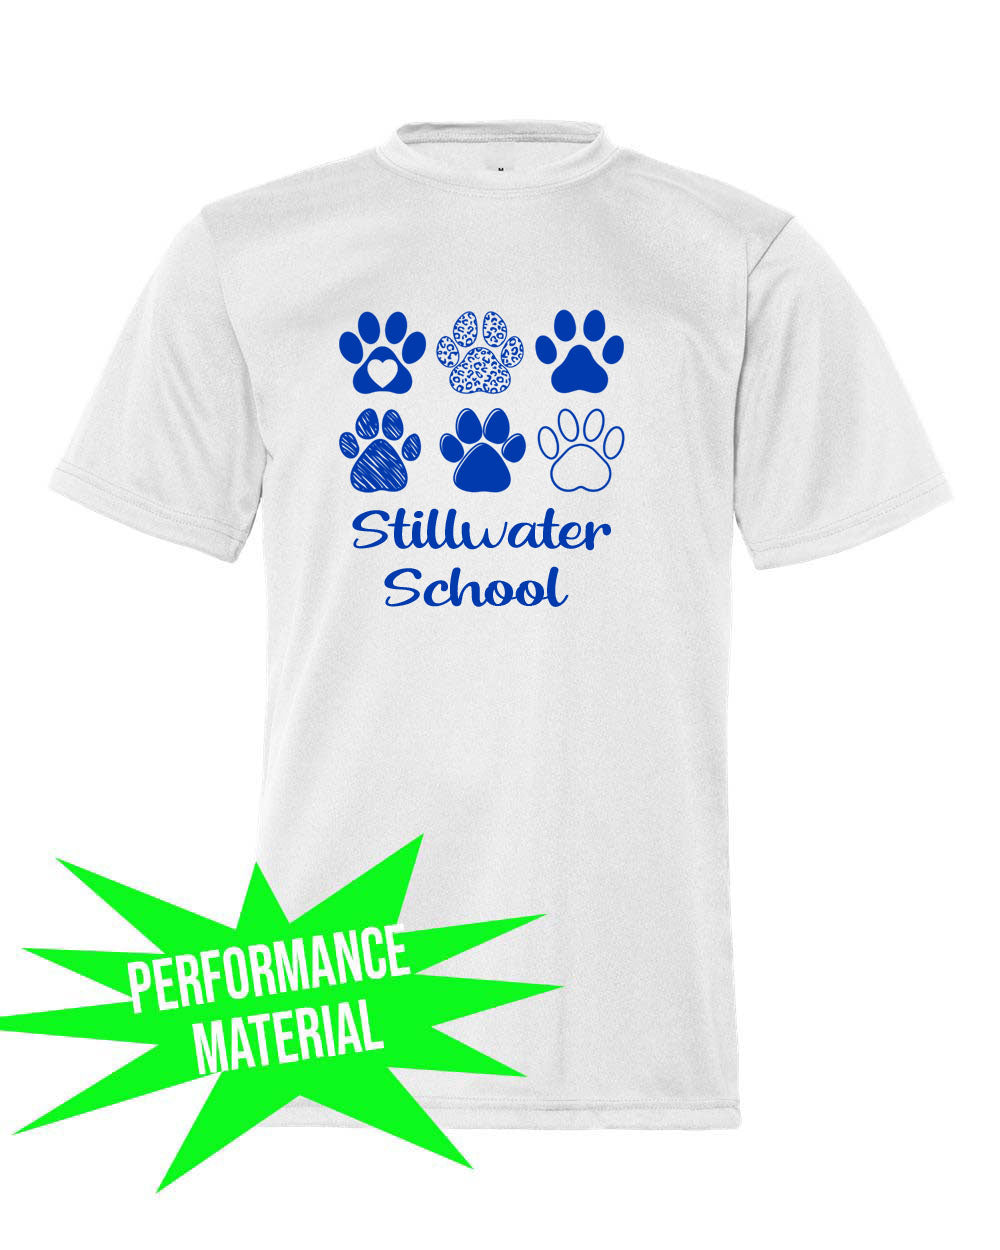 Stillwater Performance Material T-Shirt Design 20